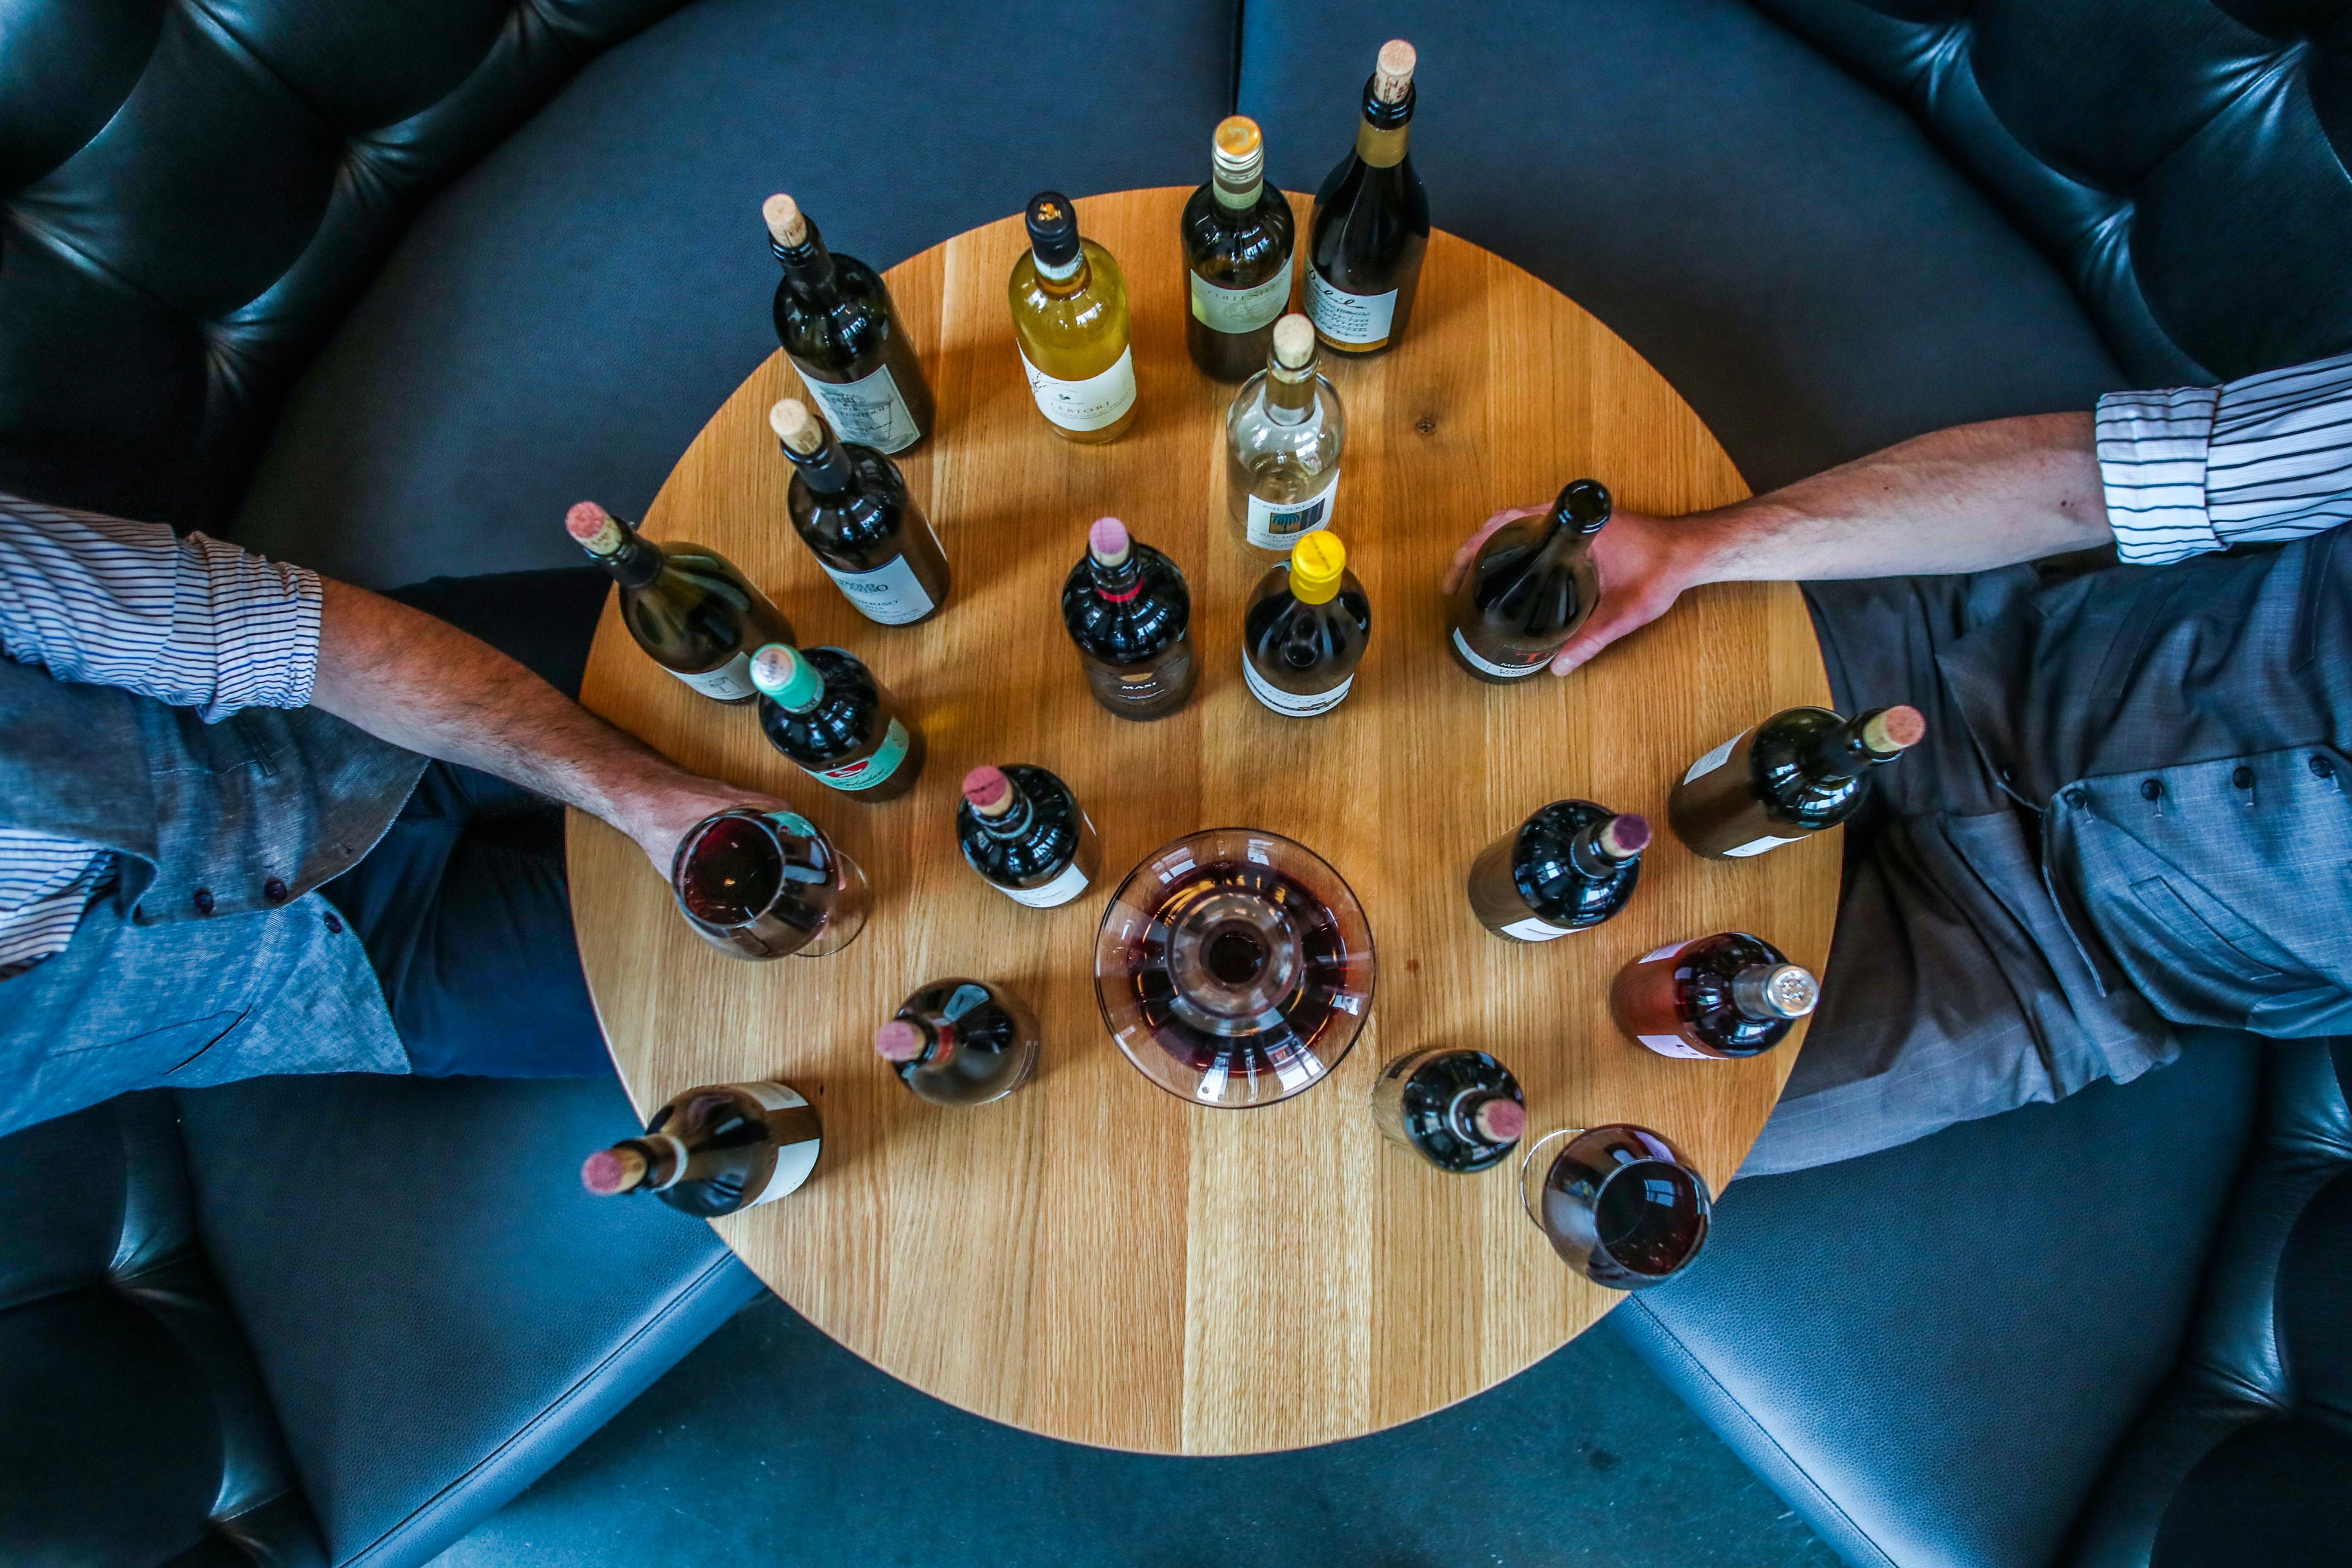 découvrez les meilleures associations de vins avec notre guide de l'art de l'accord mets et vins. trouvez la combinaison parfaite avec notre sélectioin de vins pour accompagner vos plats.